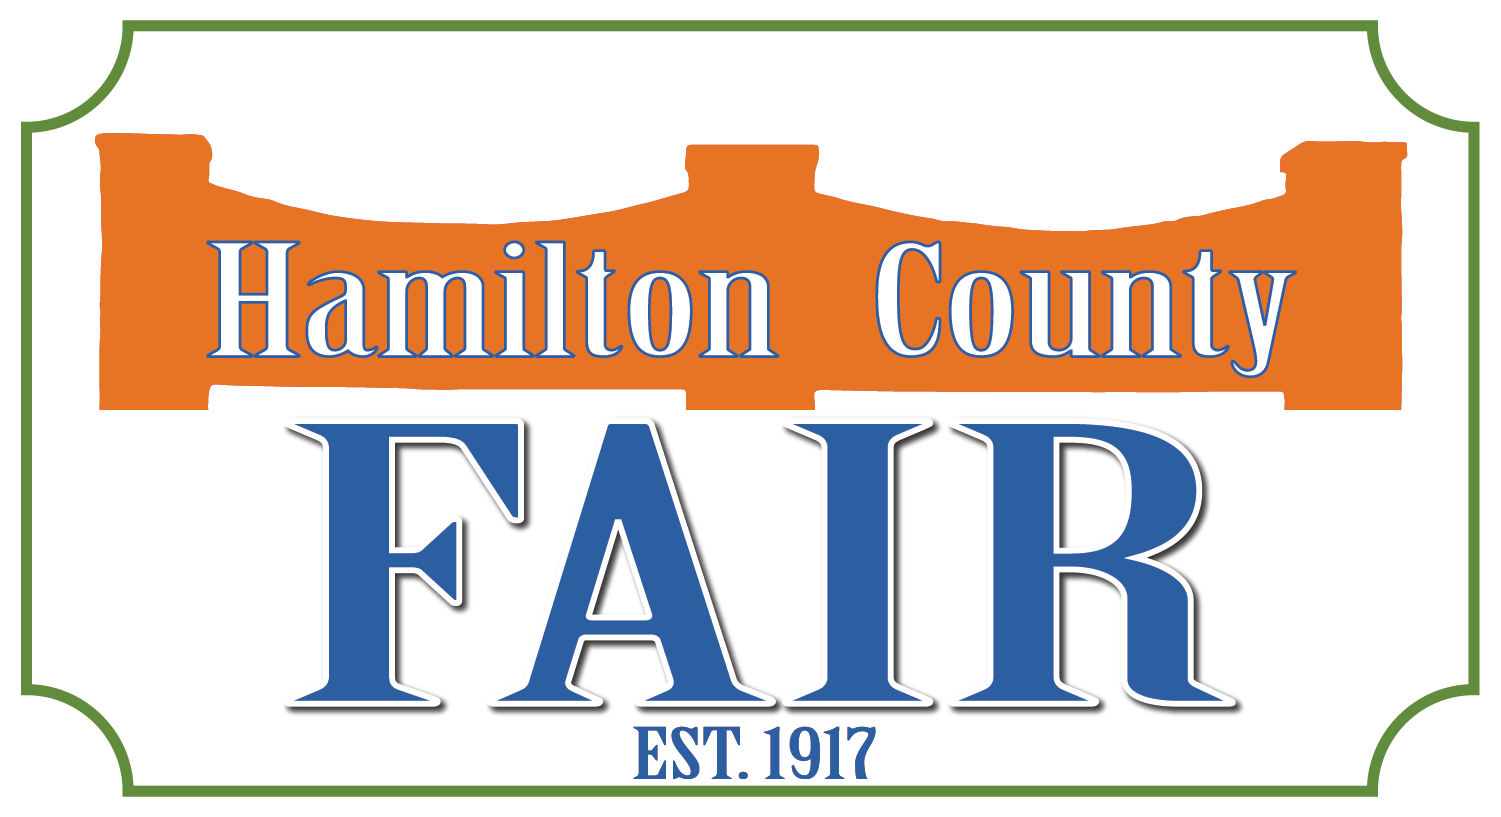 Hamilton County Fairgrounds